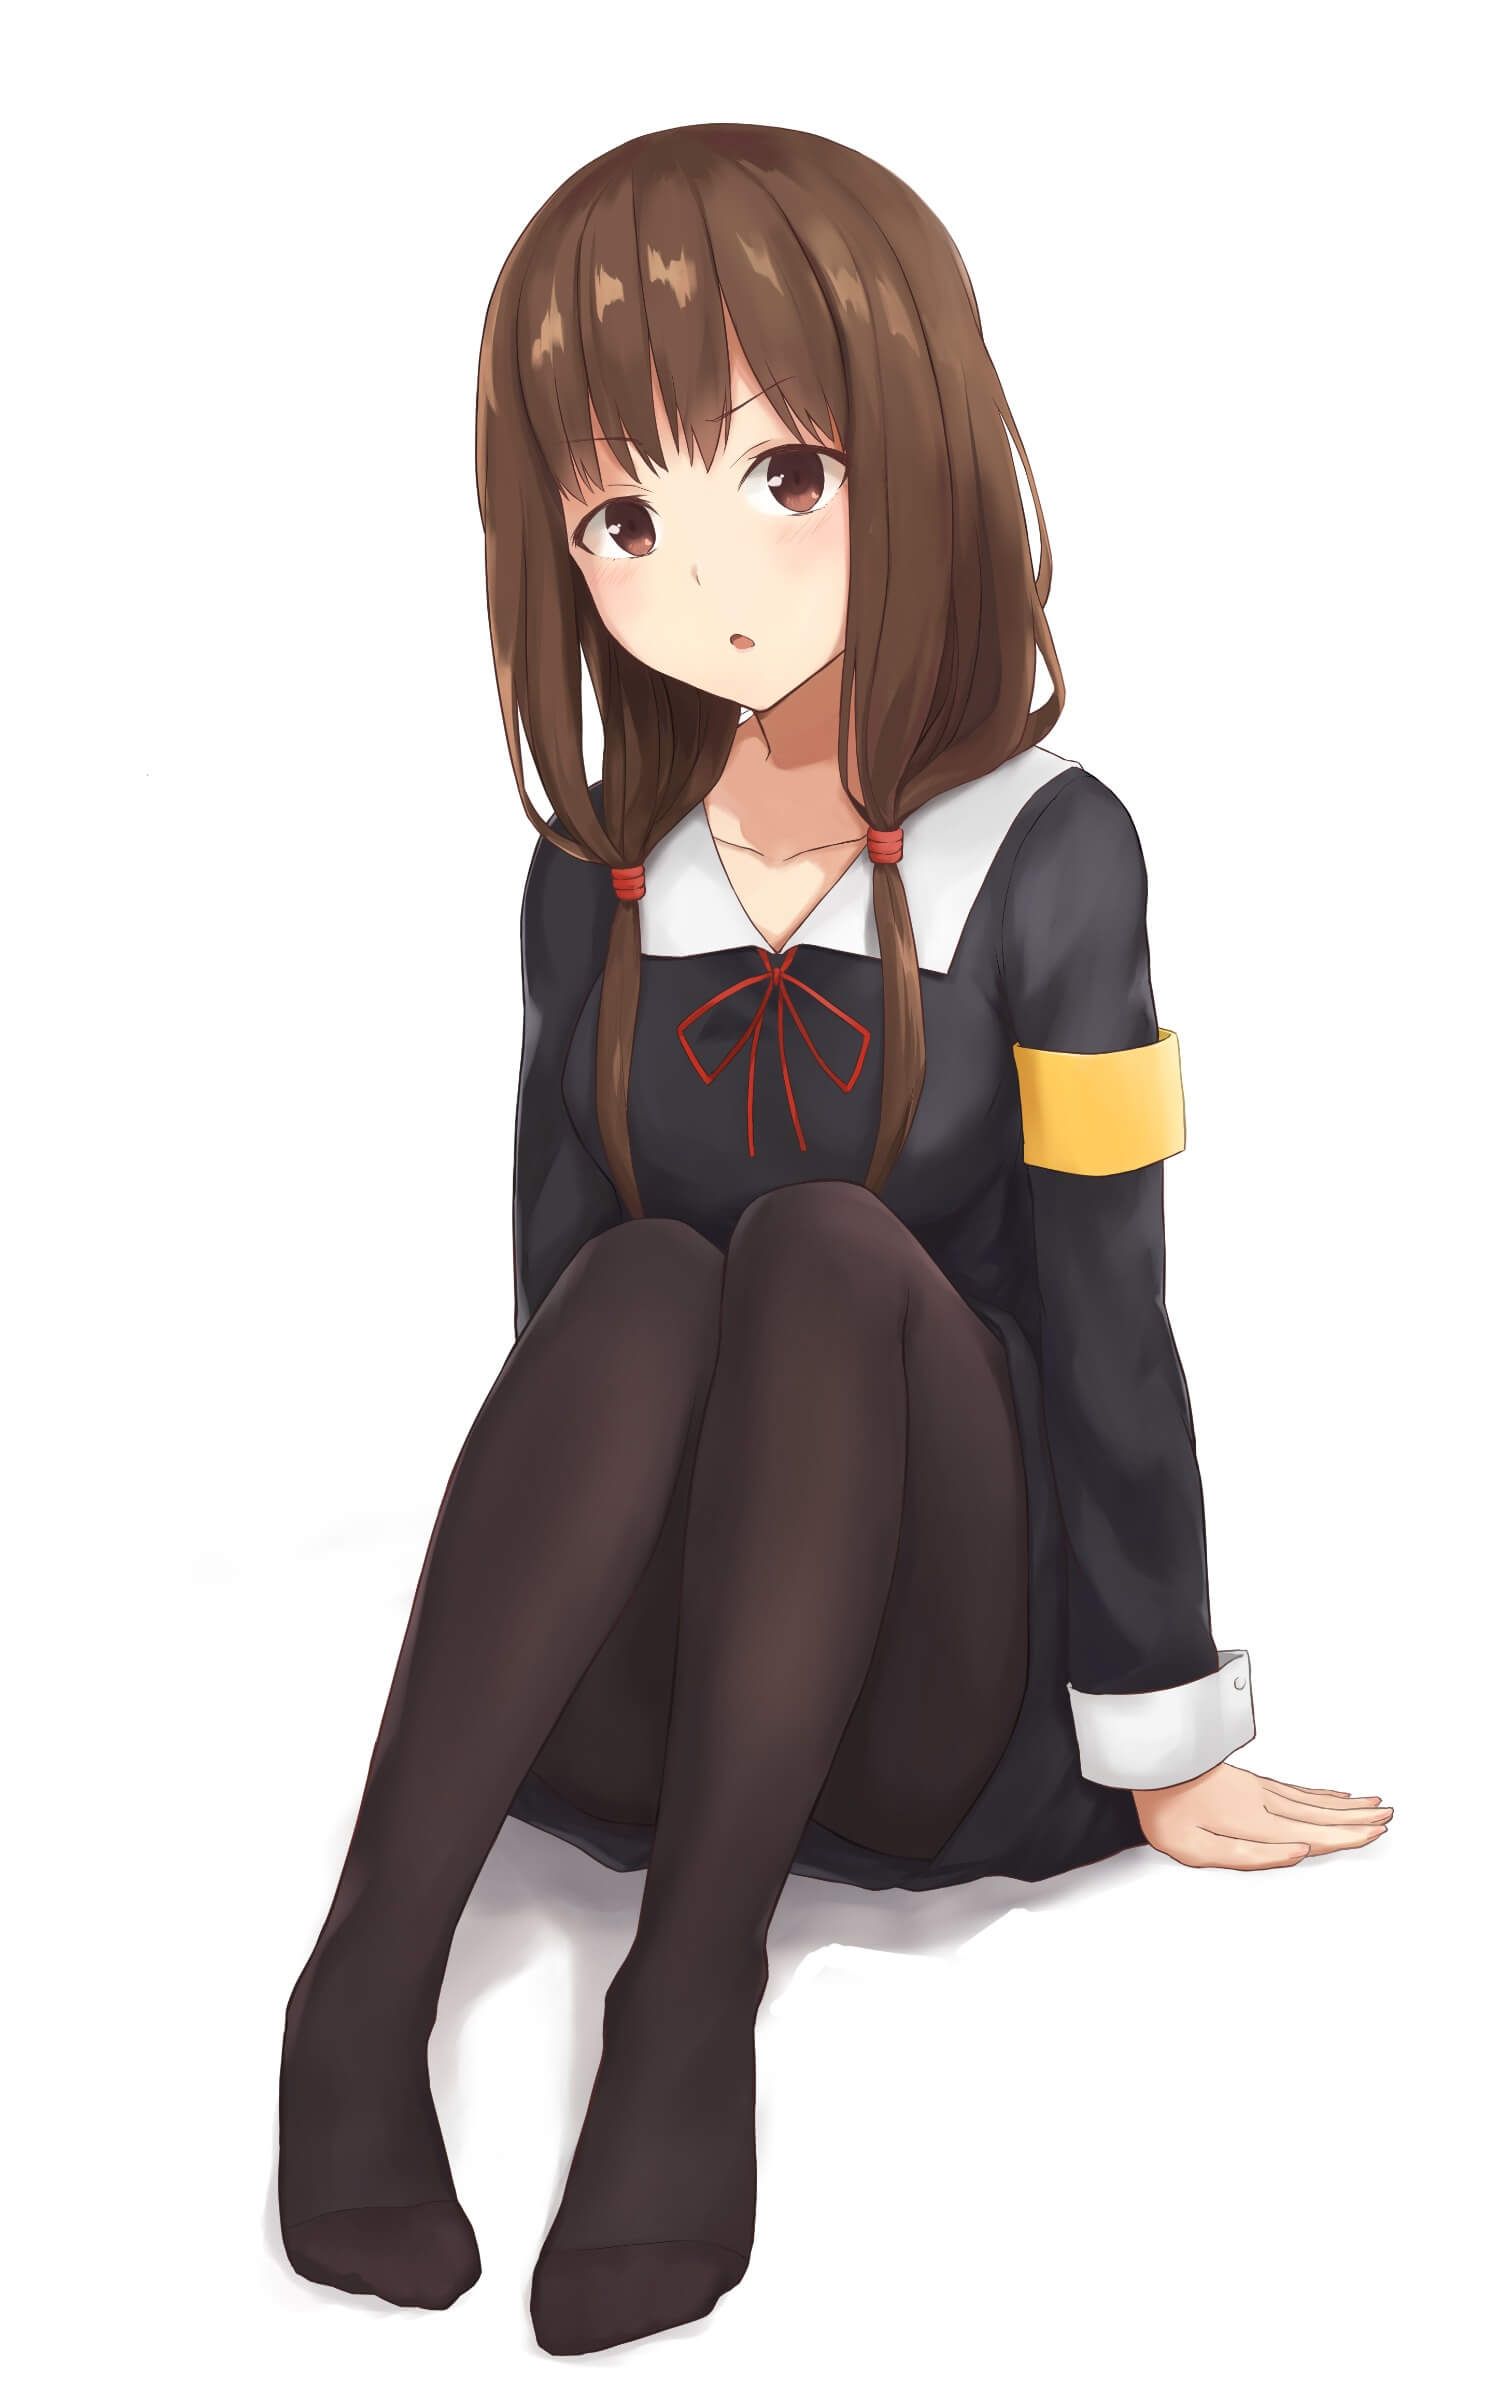 【2D】Erotic cute image of schoolgirl wearing school uniform (blazer sailor) 27